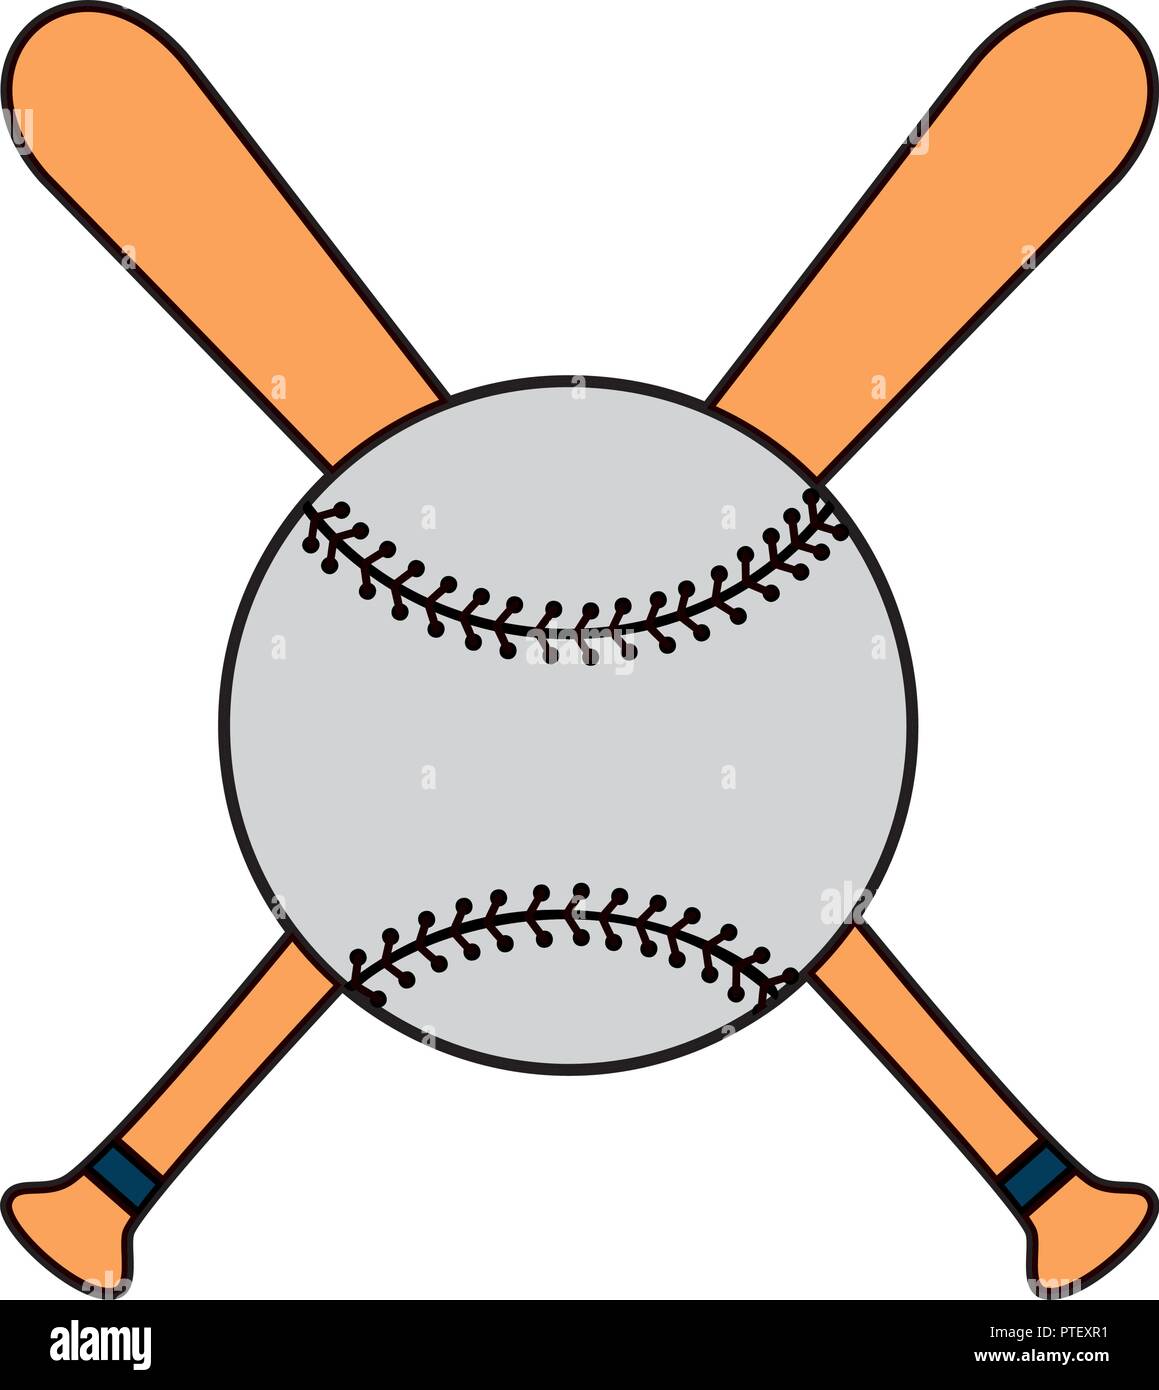 Deporte béisbol bates y bolas Imagen Vector de stock - Alamy